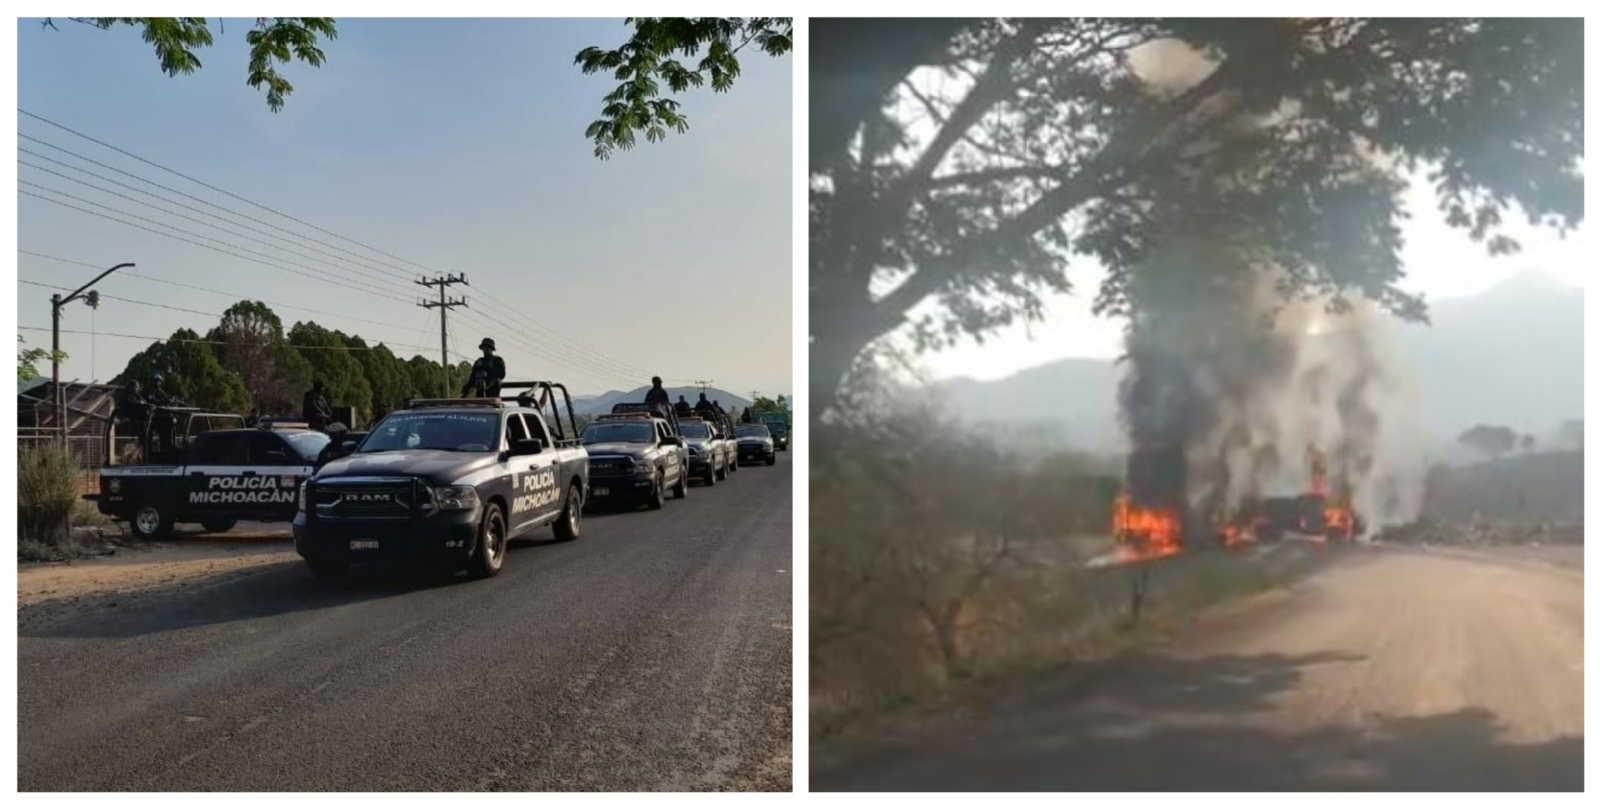 Incendios, bloqueos y balaceras se registran este viernes en Aguililla, Michoacán: VIDEOS